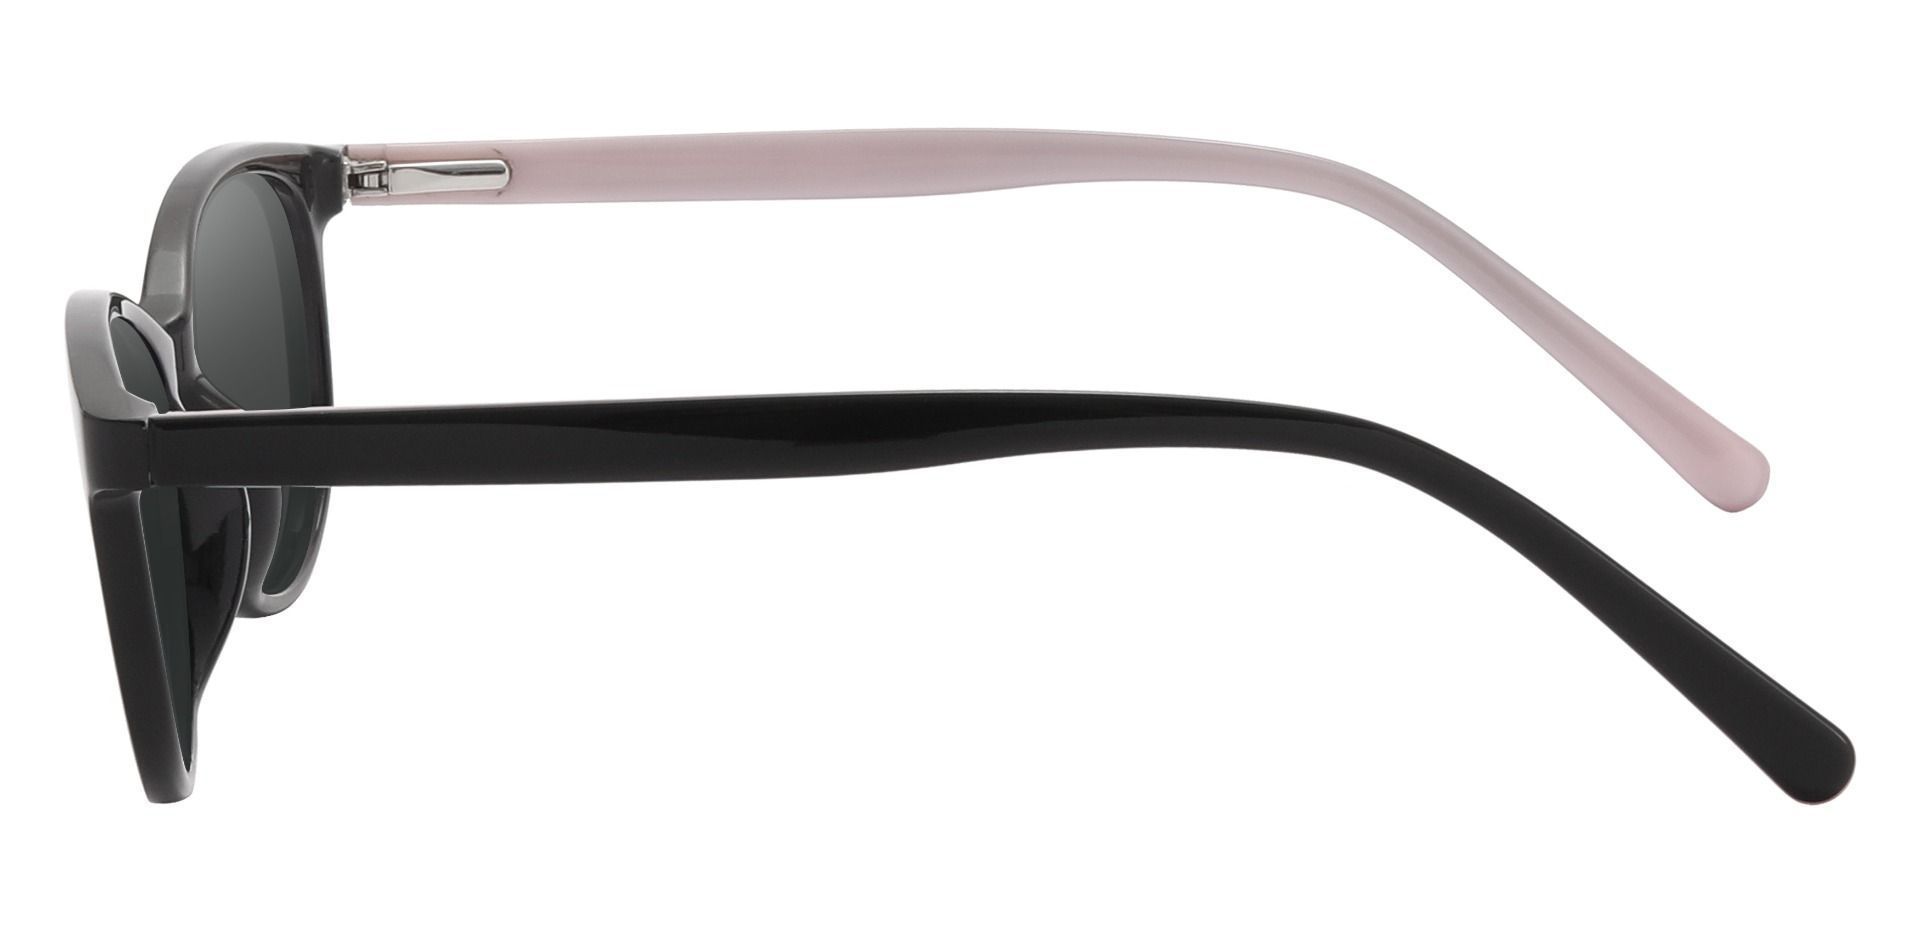 Adora Oval Prescription Sunglasses - Black Frame With Gray Lenses